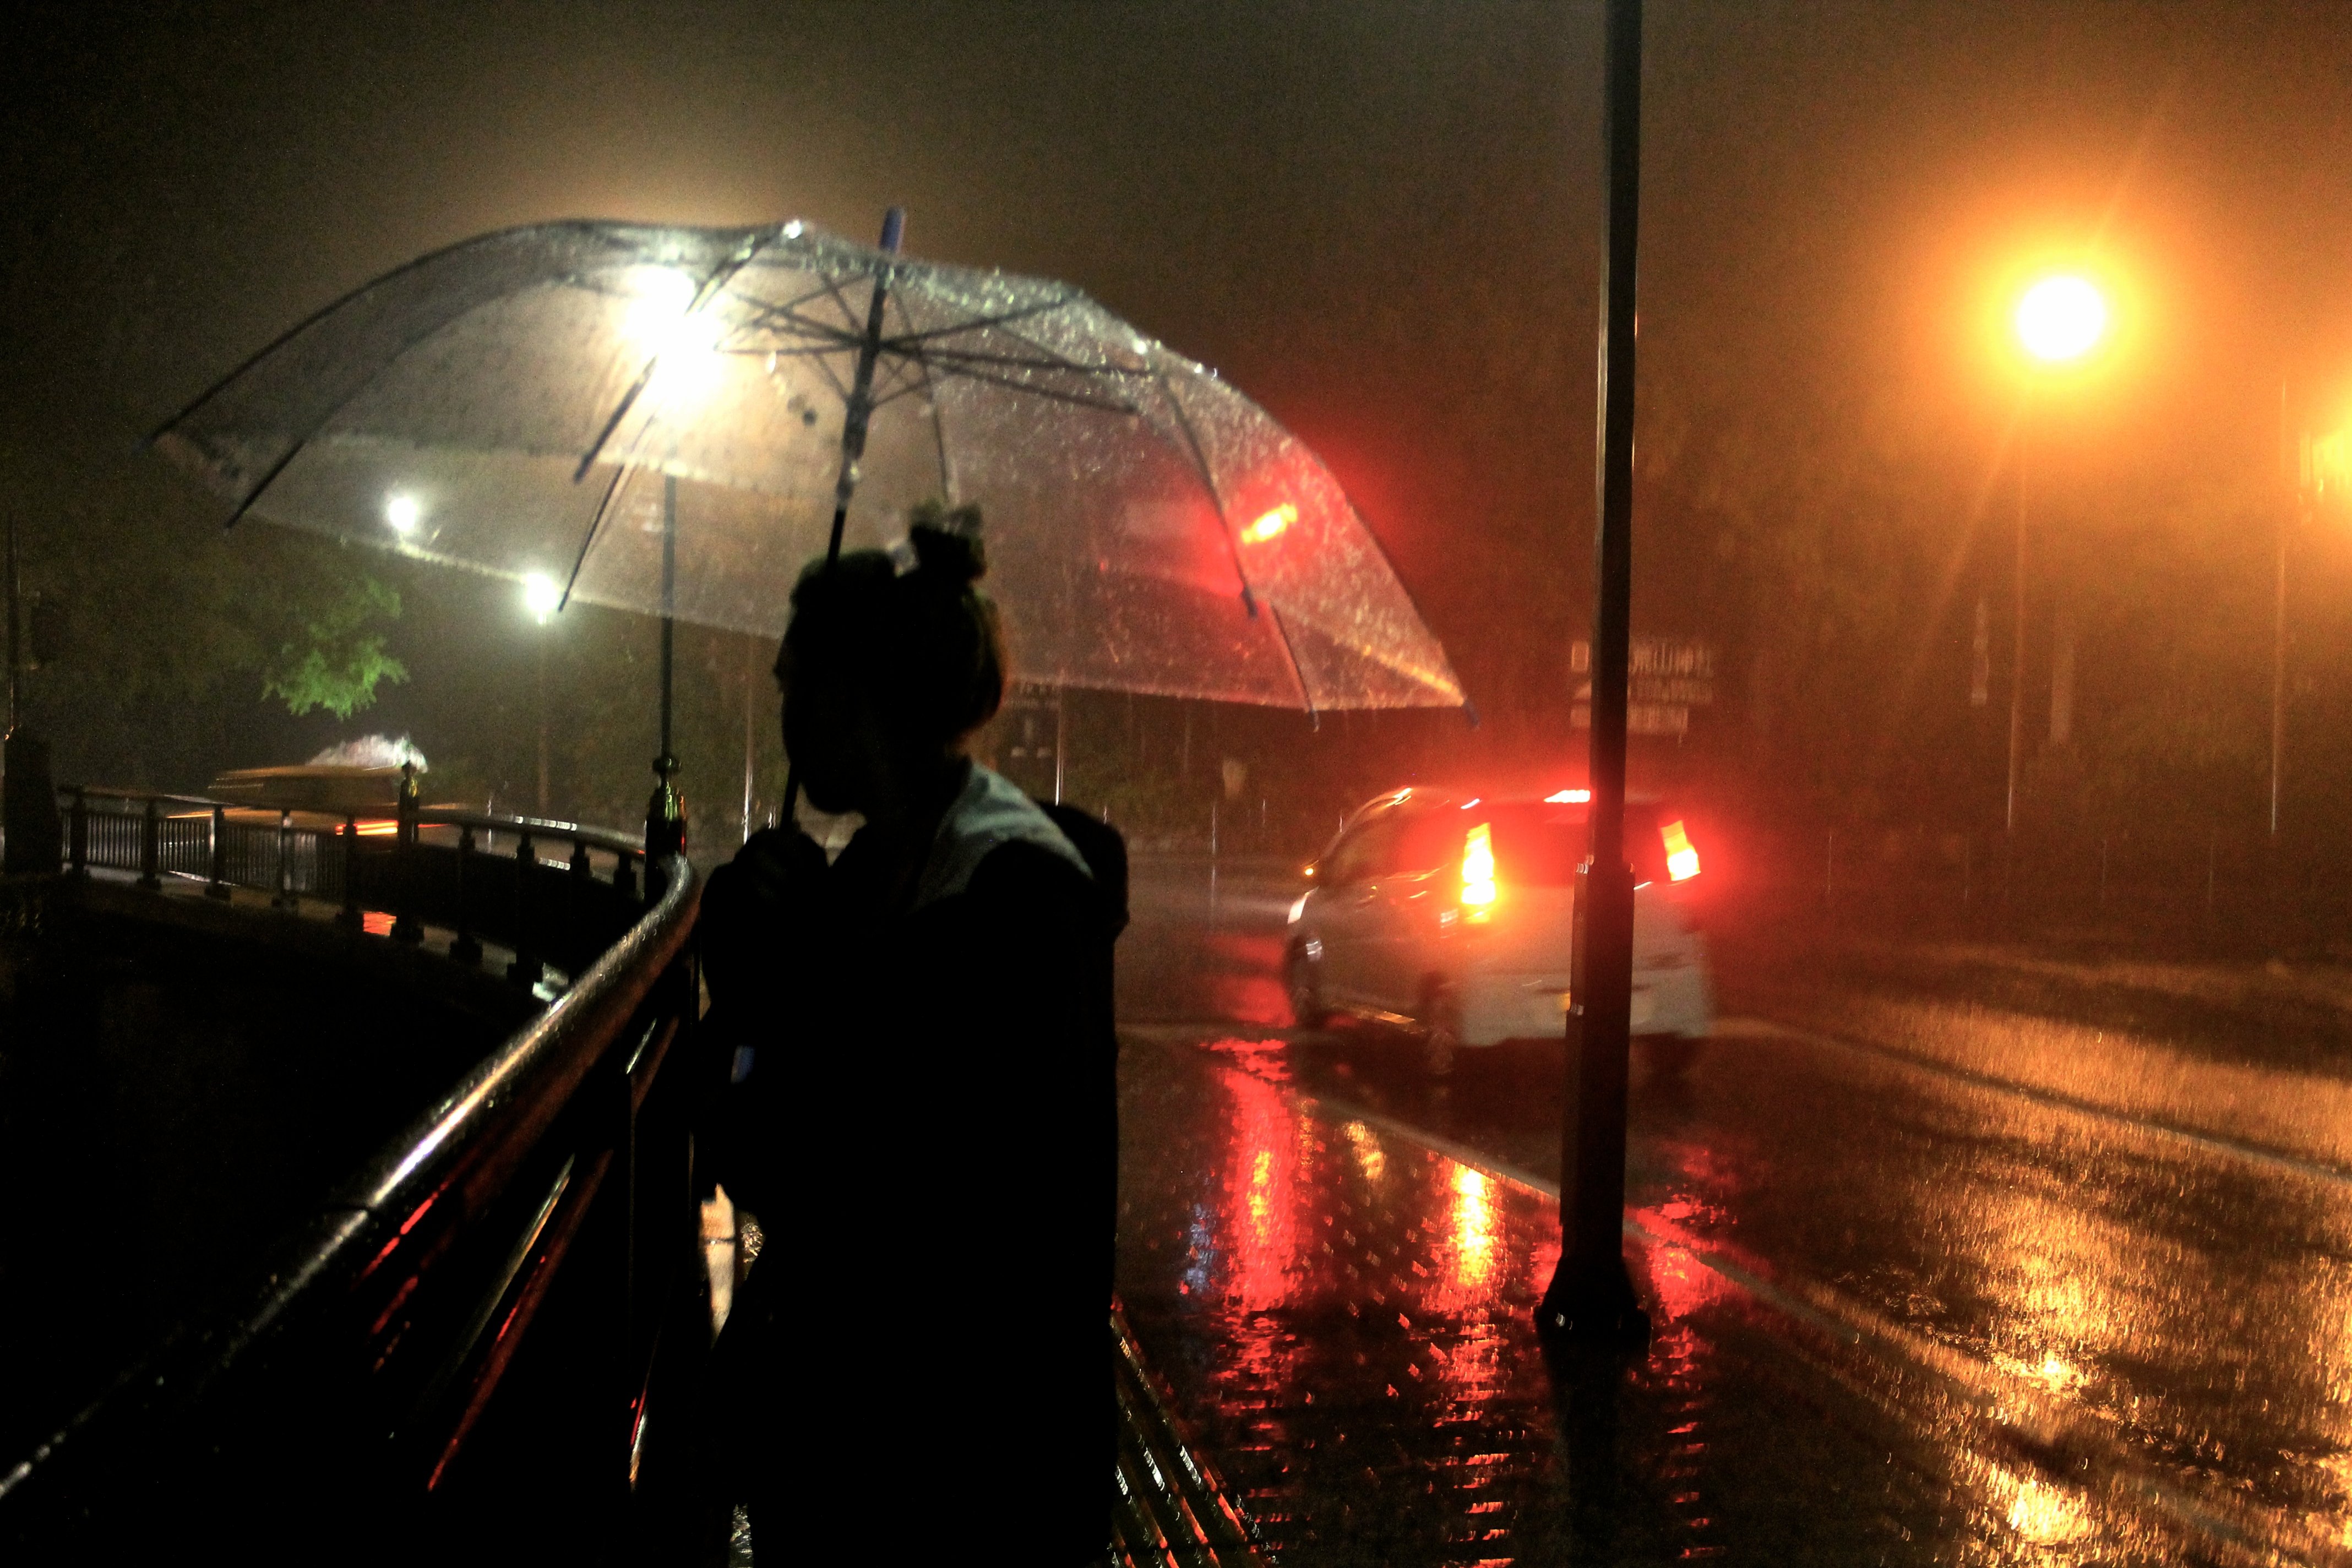 Сегодня ночь дождь есть. Дождь ночью. Человек под зонтом. Город ночью под дождем. "Дождливый вечер".